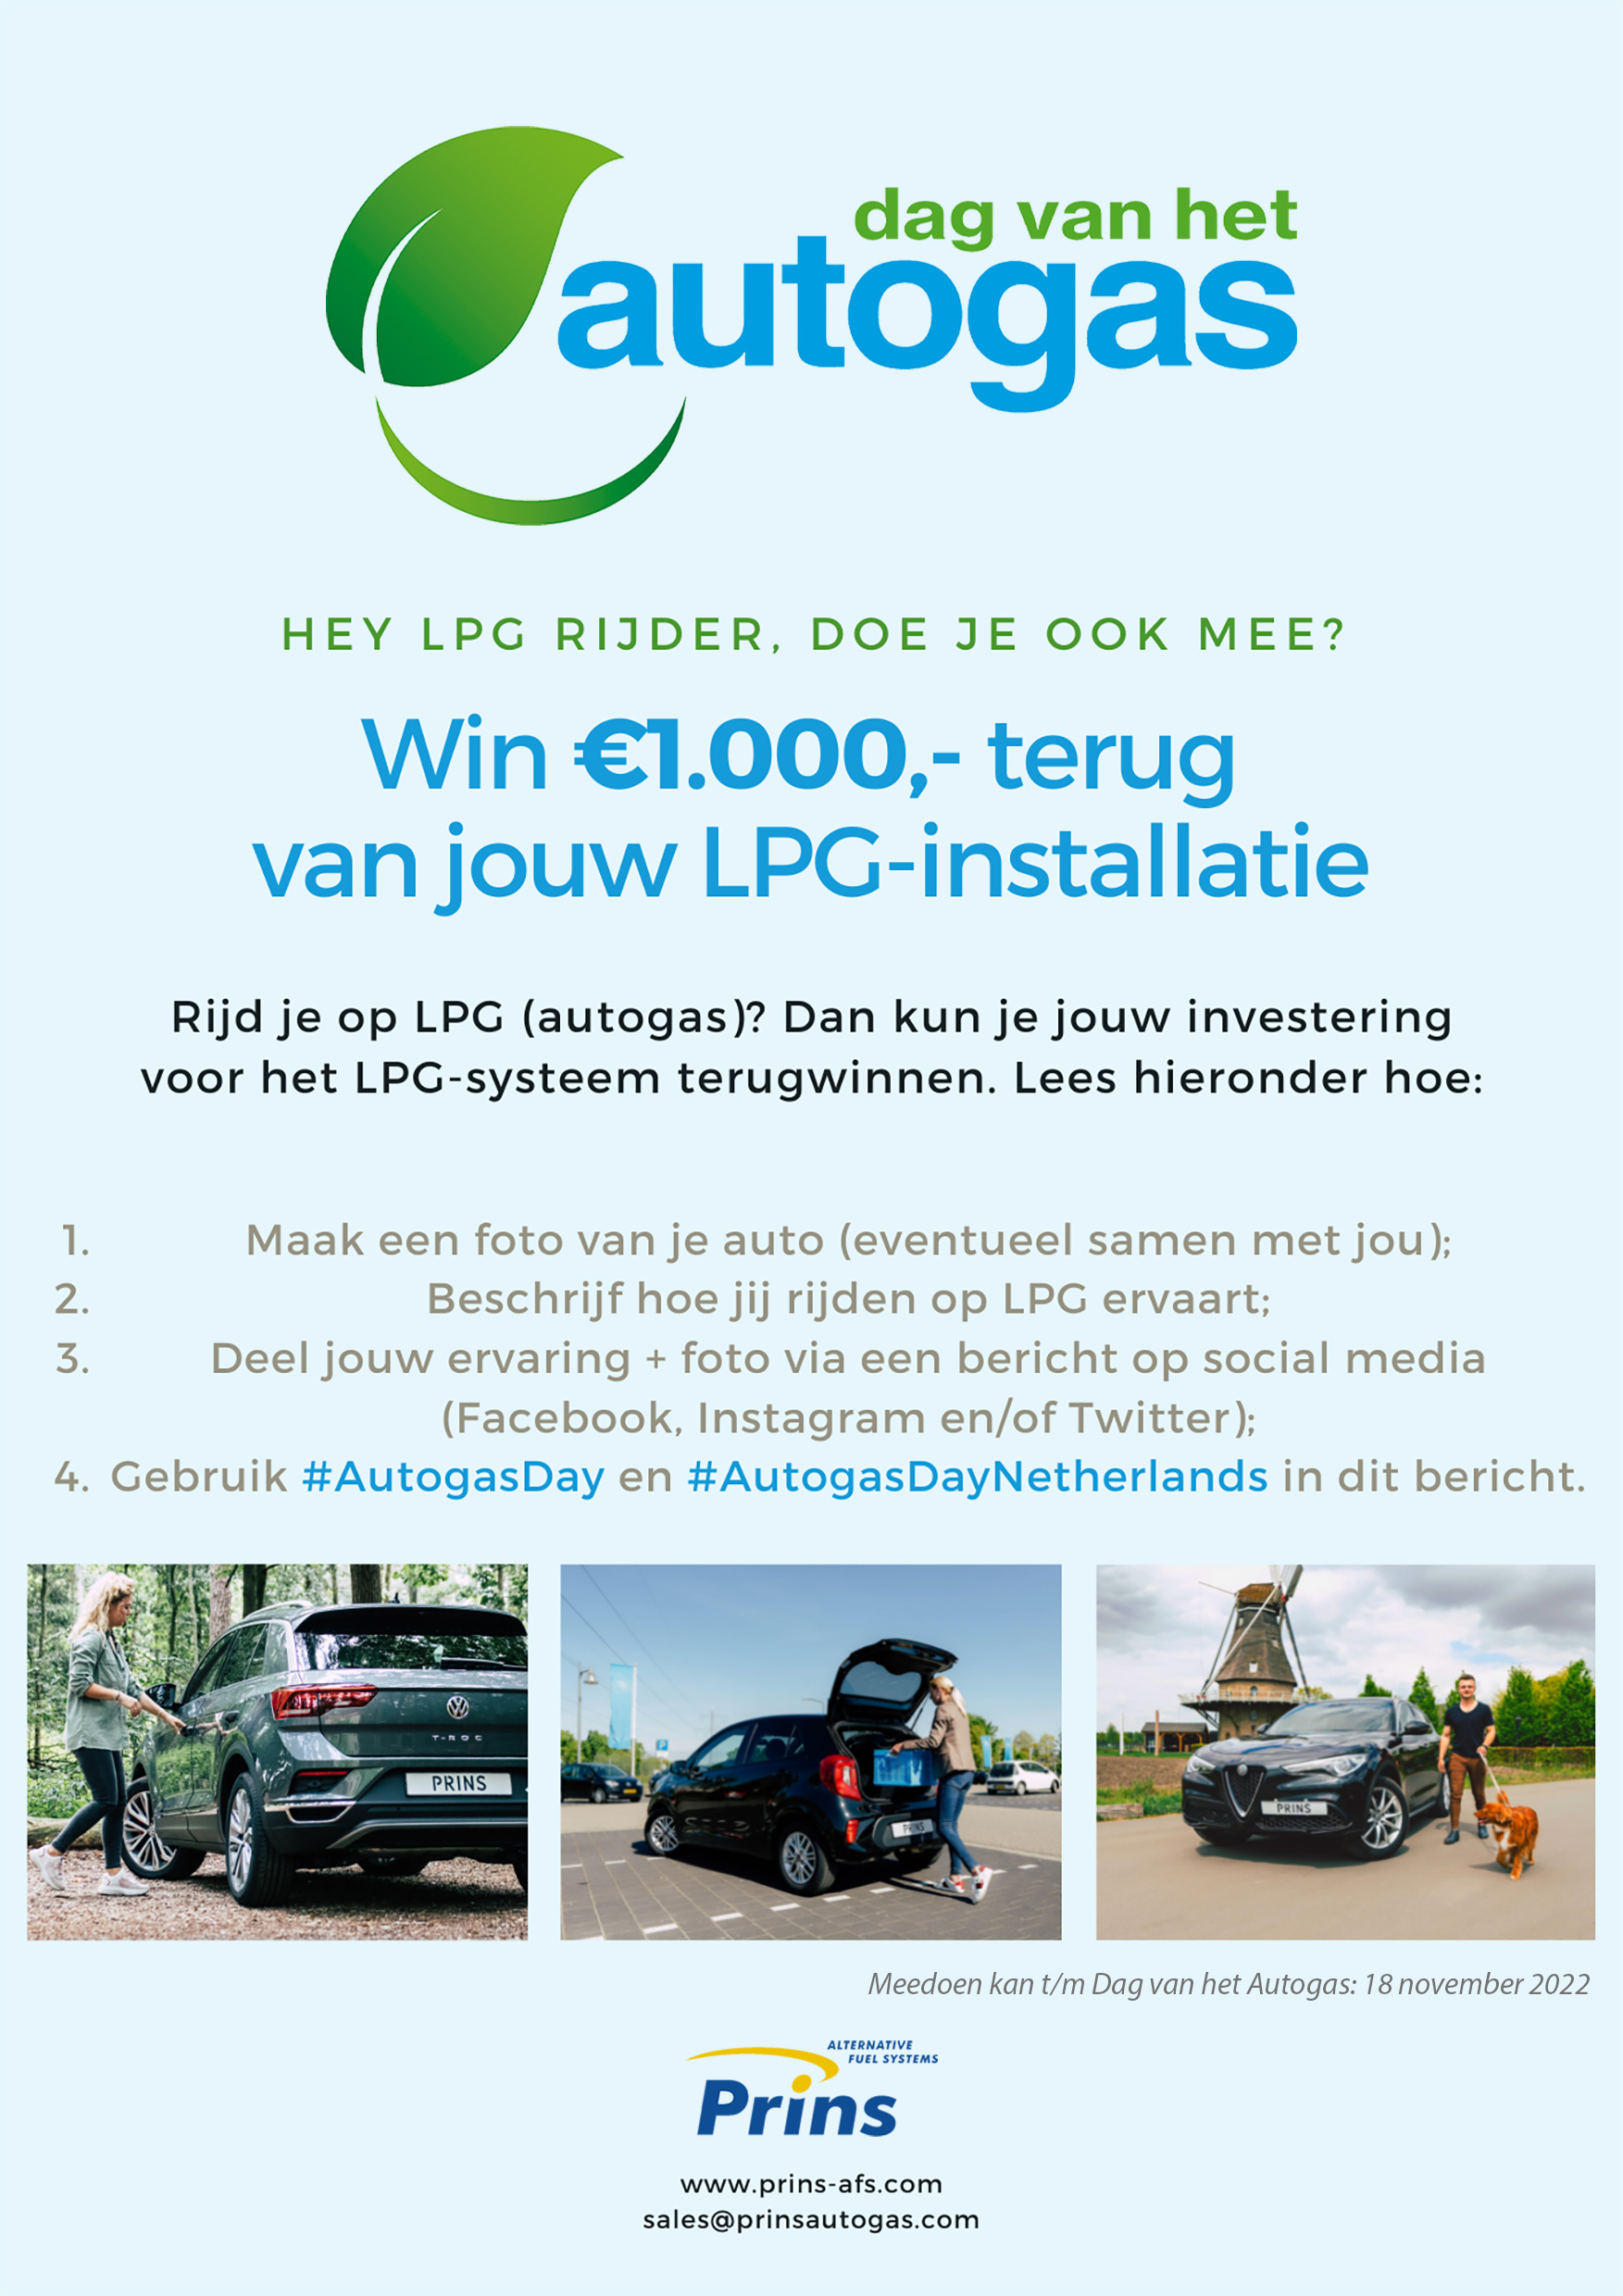 Autogas Day NL flyer A5 JPG.jpg